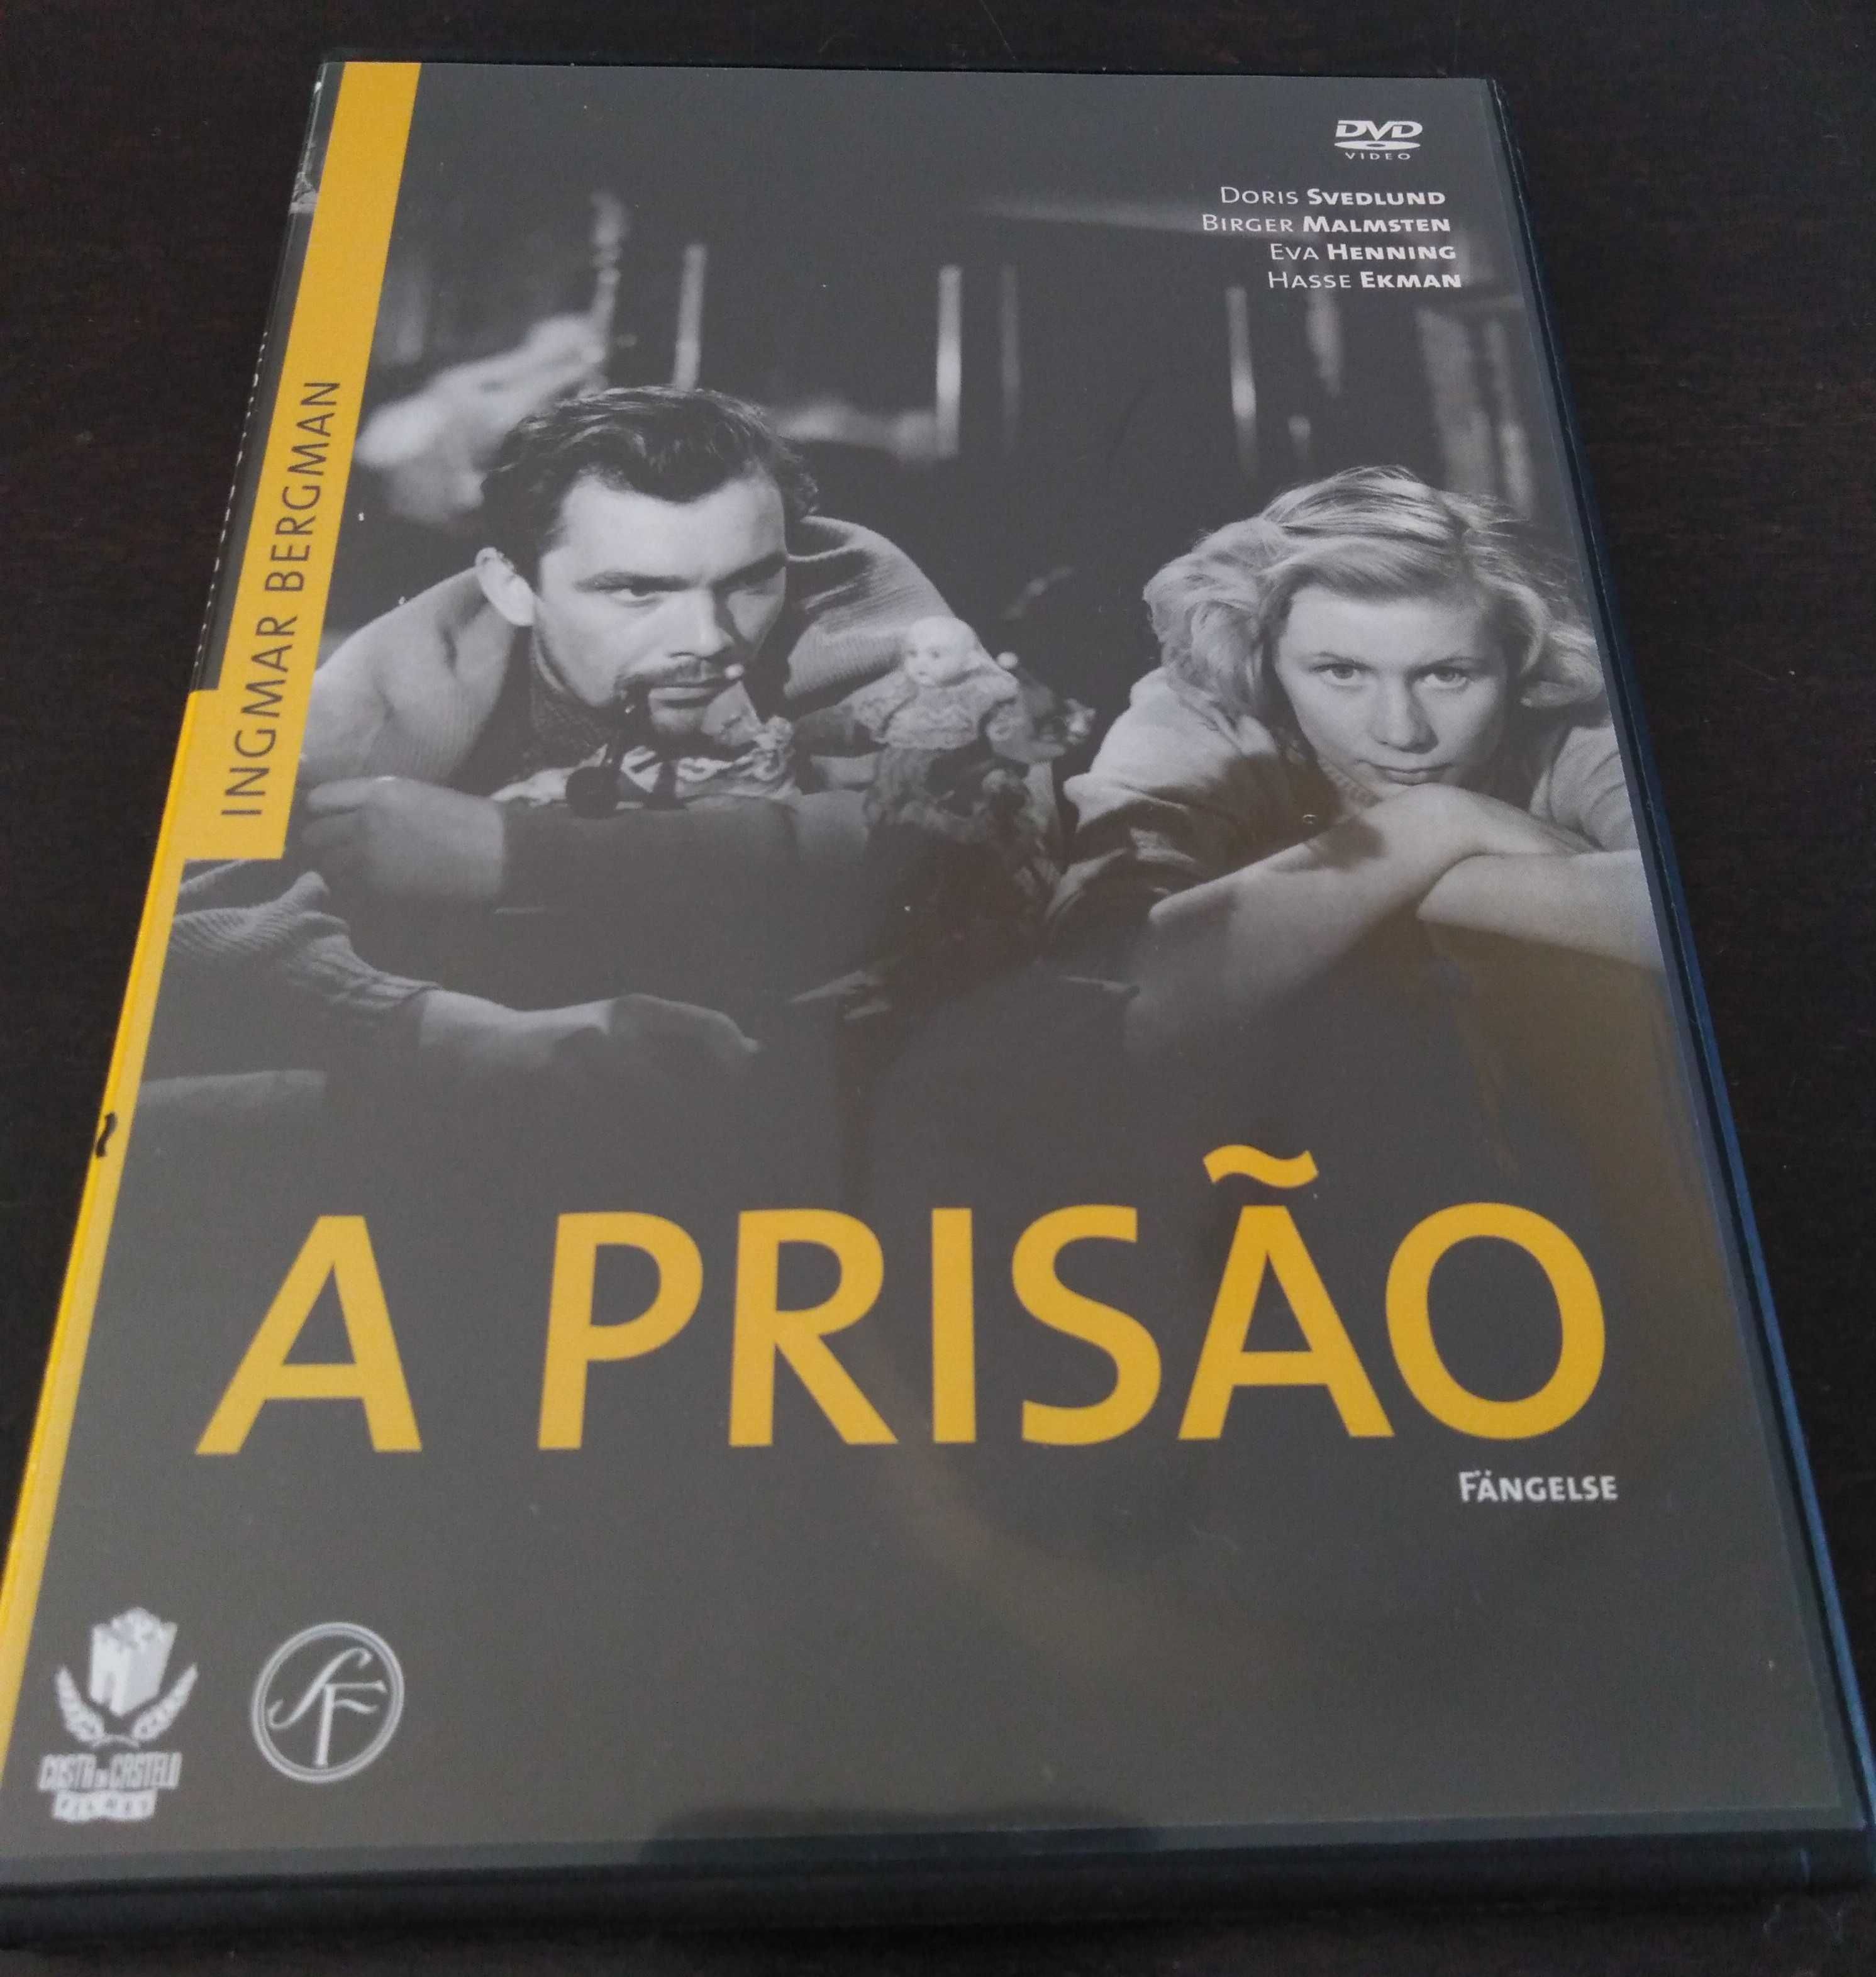 DVD "A prisão", de Ingmar Bergman